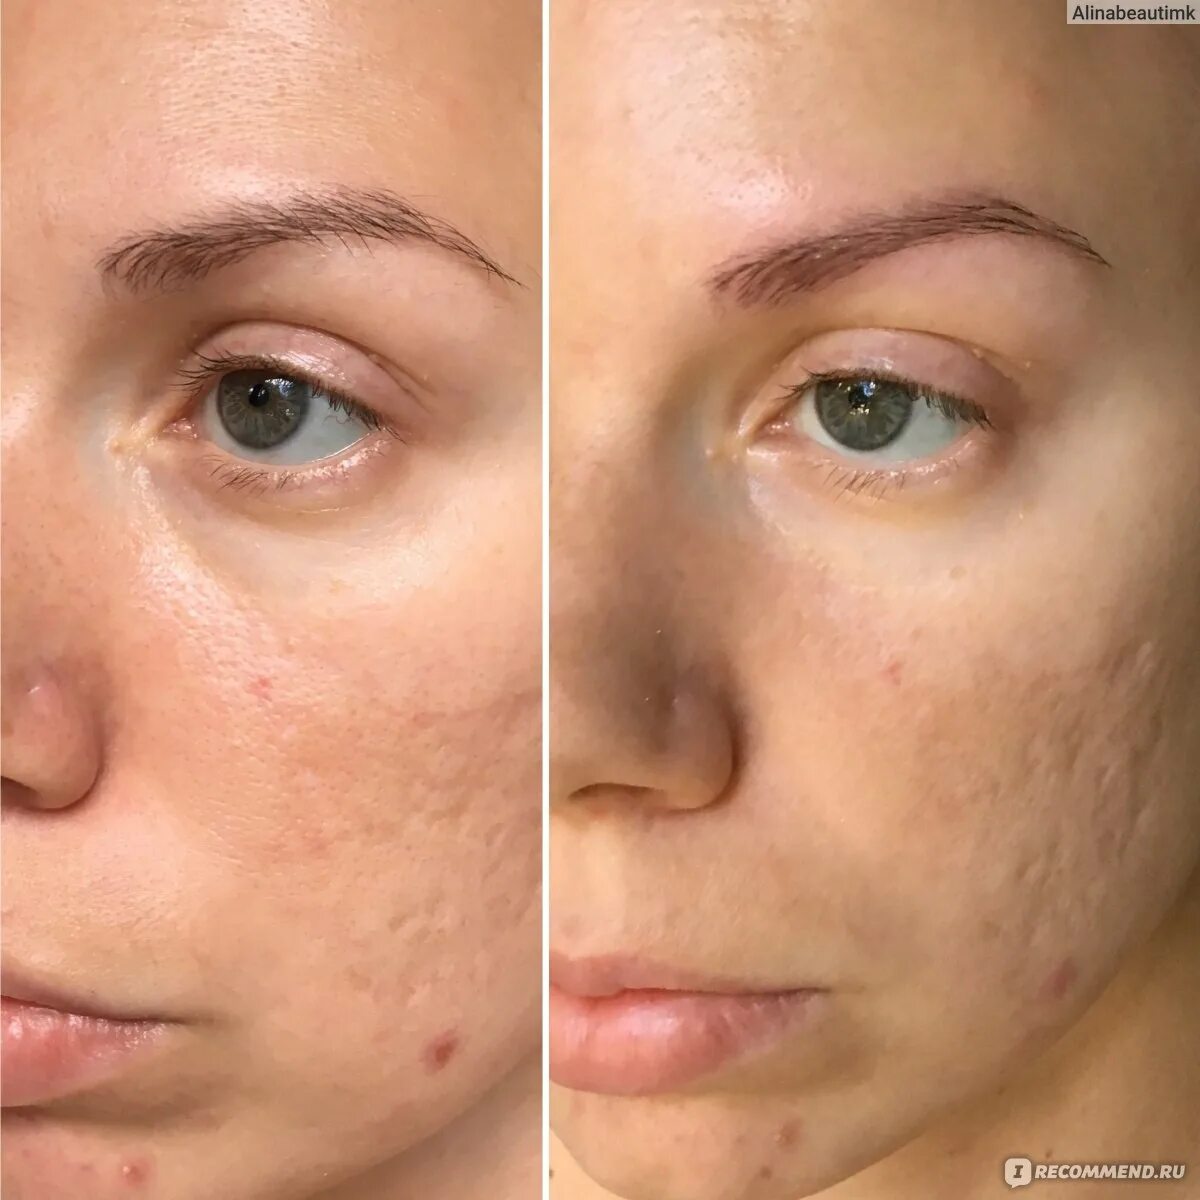 Альгинатная маска до и после фото. Альгинатная маска для лица эффект до и после применения. Результат альгинатная макси до и после лицо 10 применений. Альгинатная маска до и после